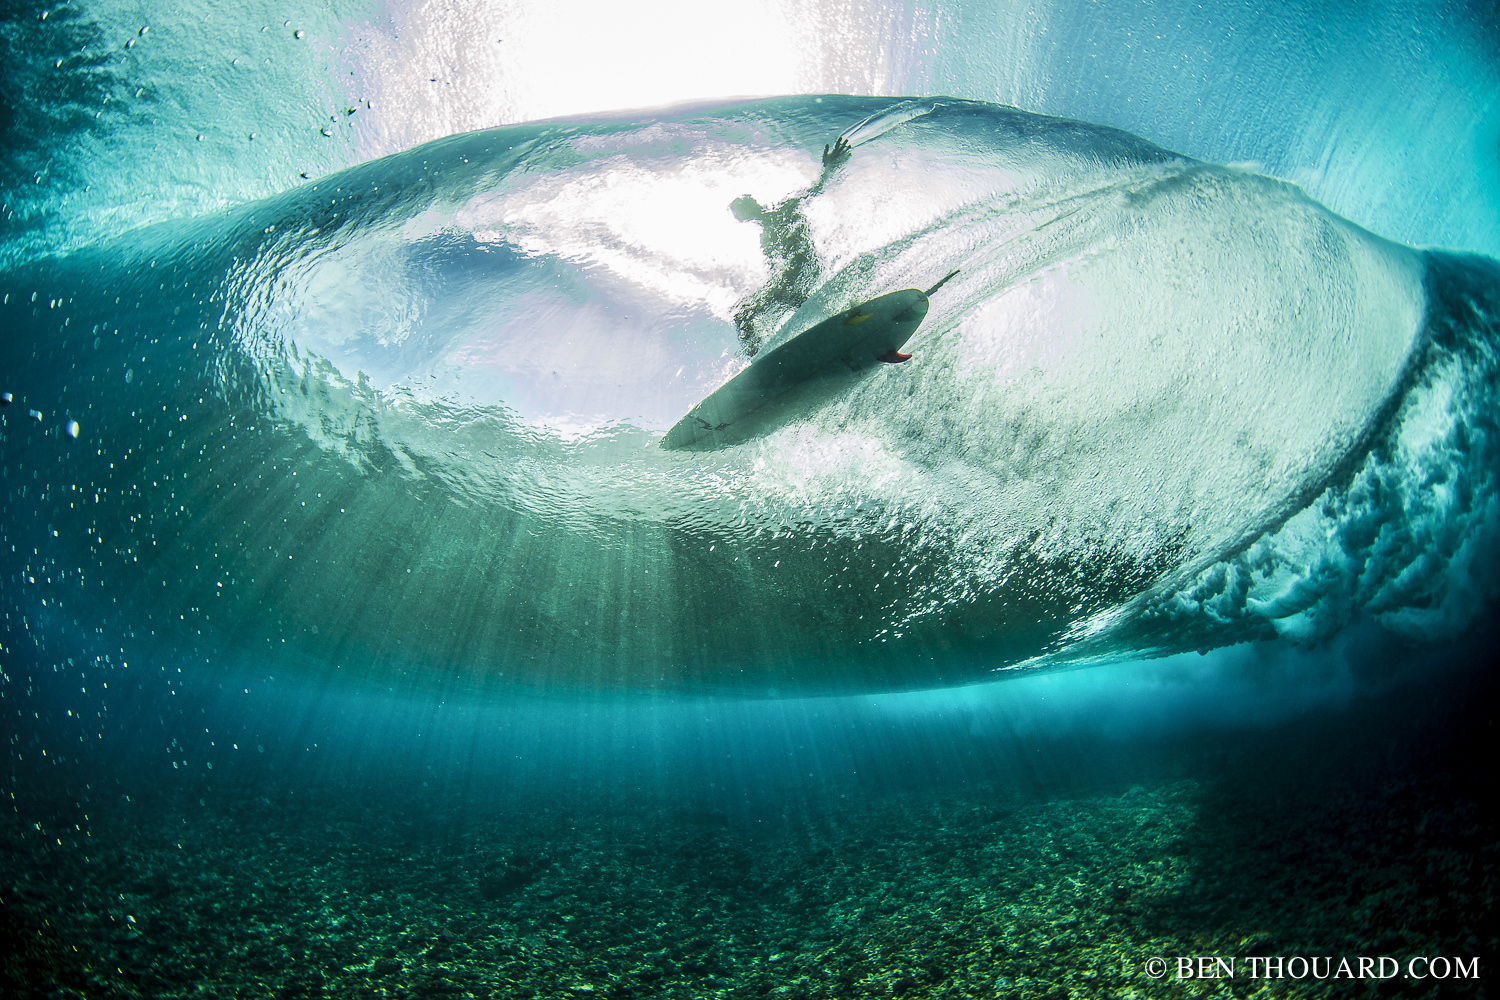 Best of 2015: Top 10 Underwater Photos